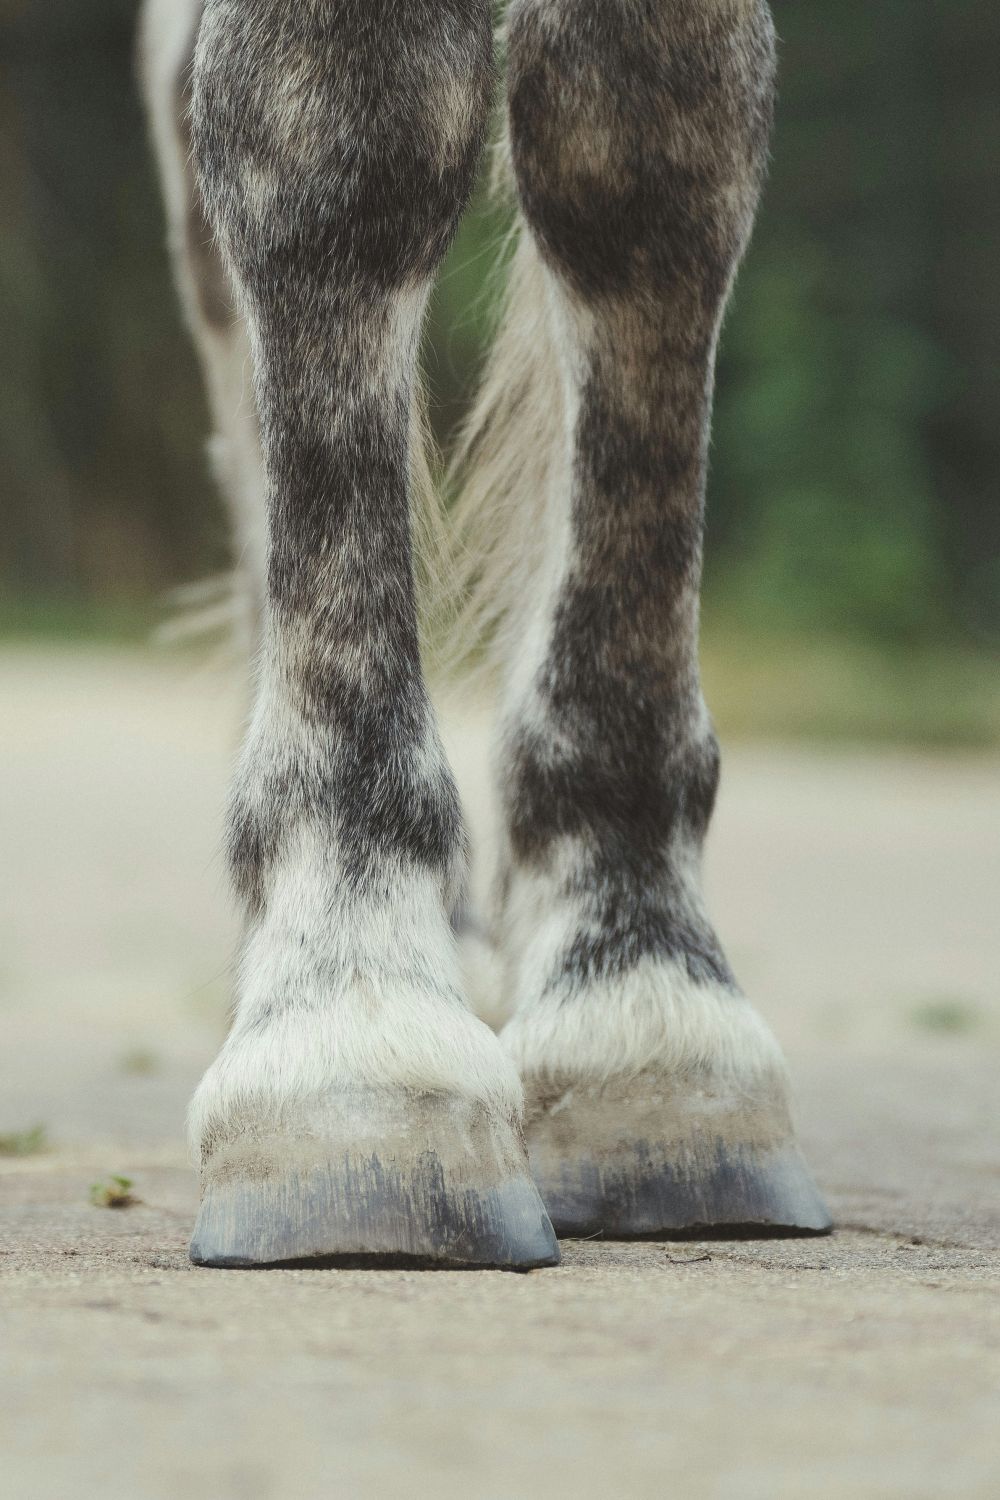 Barfotaboots för hästar: Ett modernt skydd för hästhovar